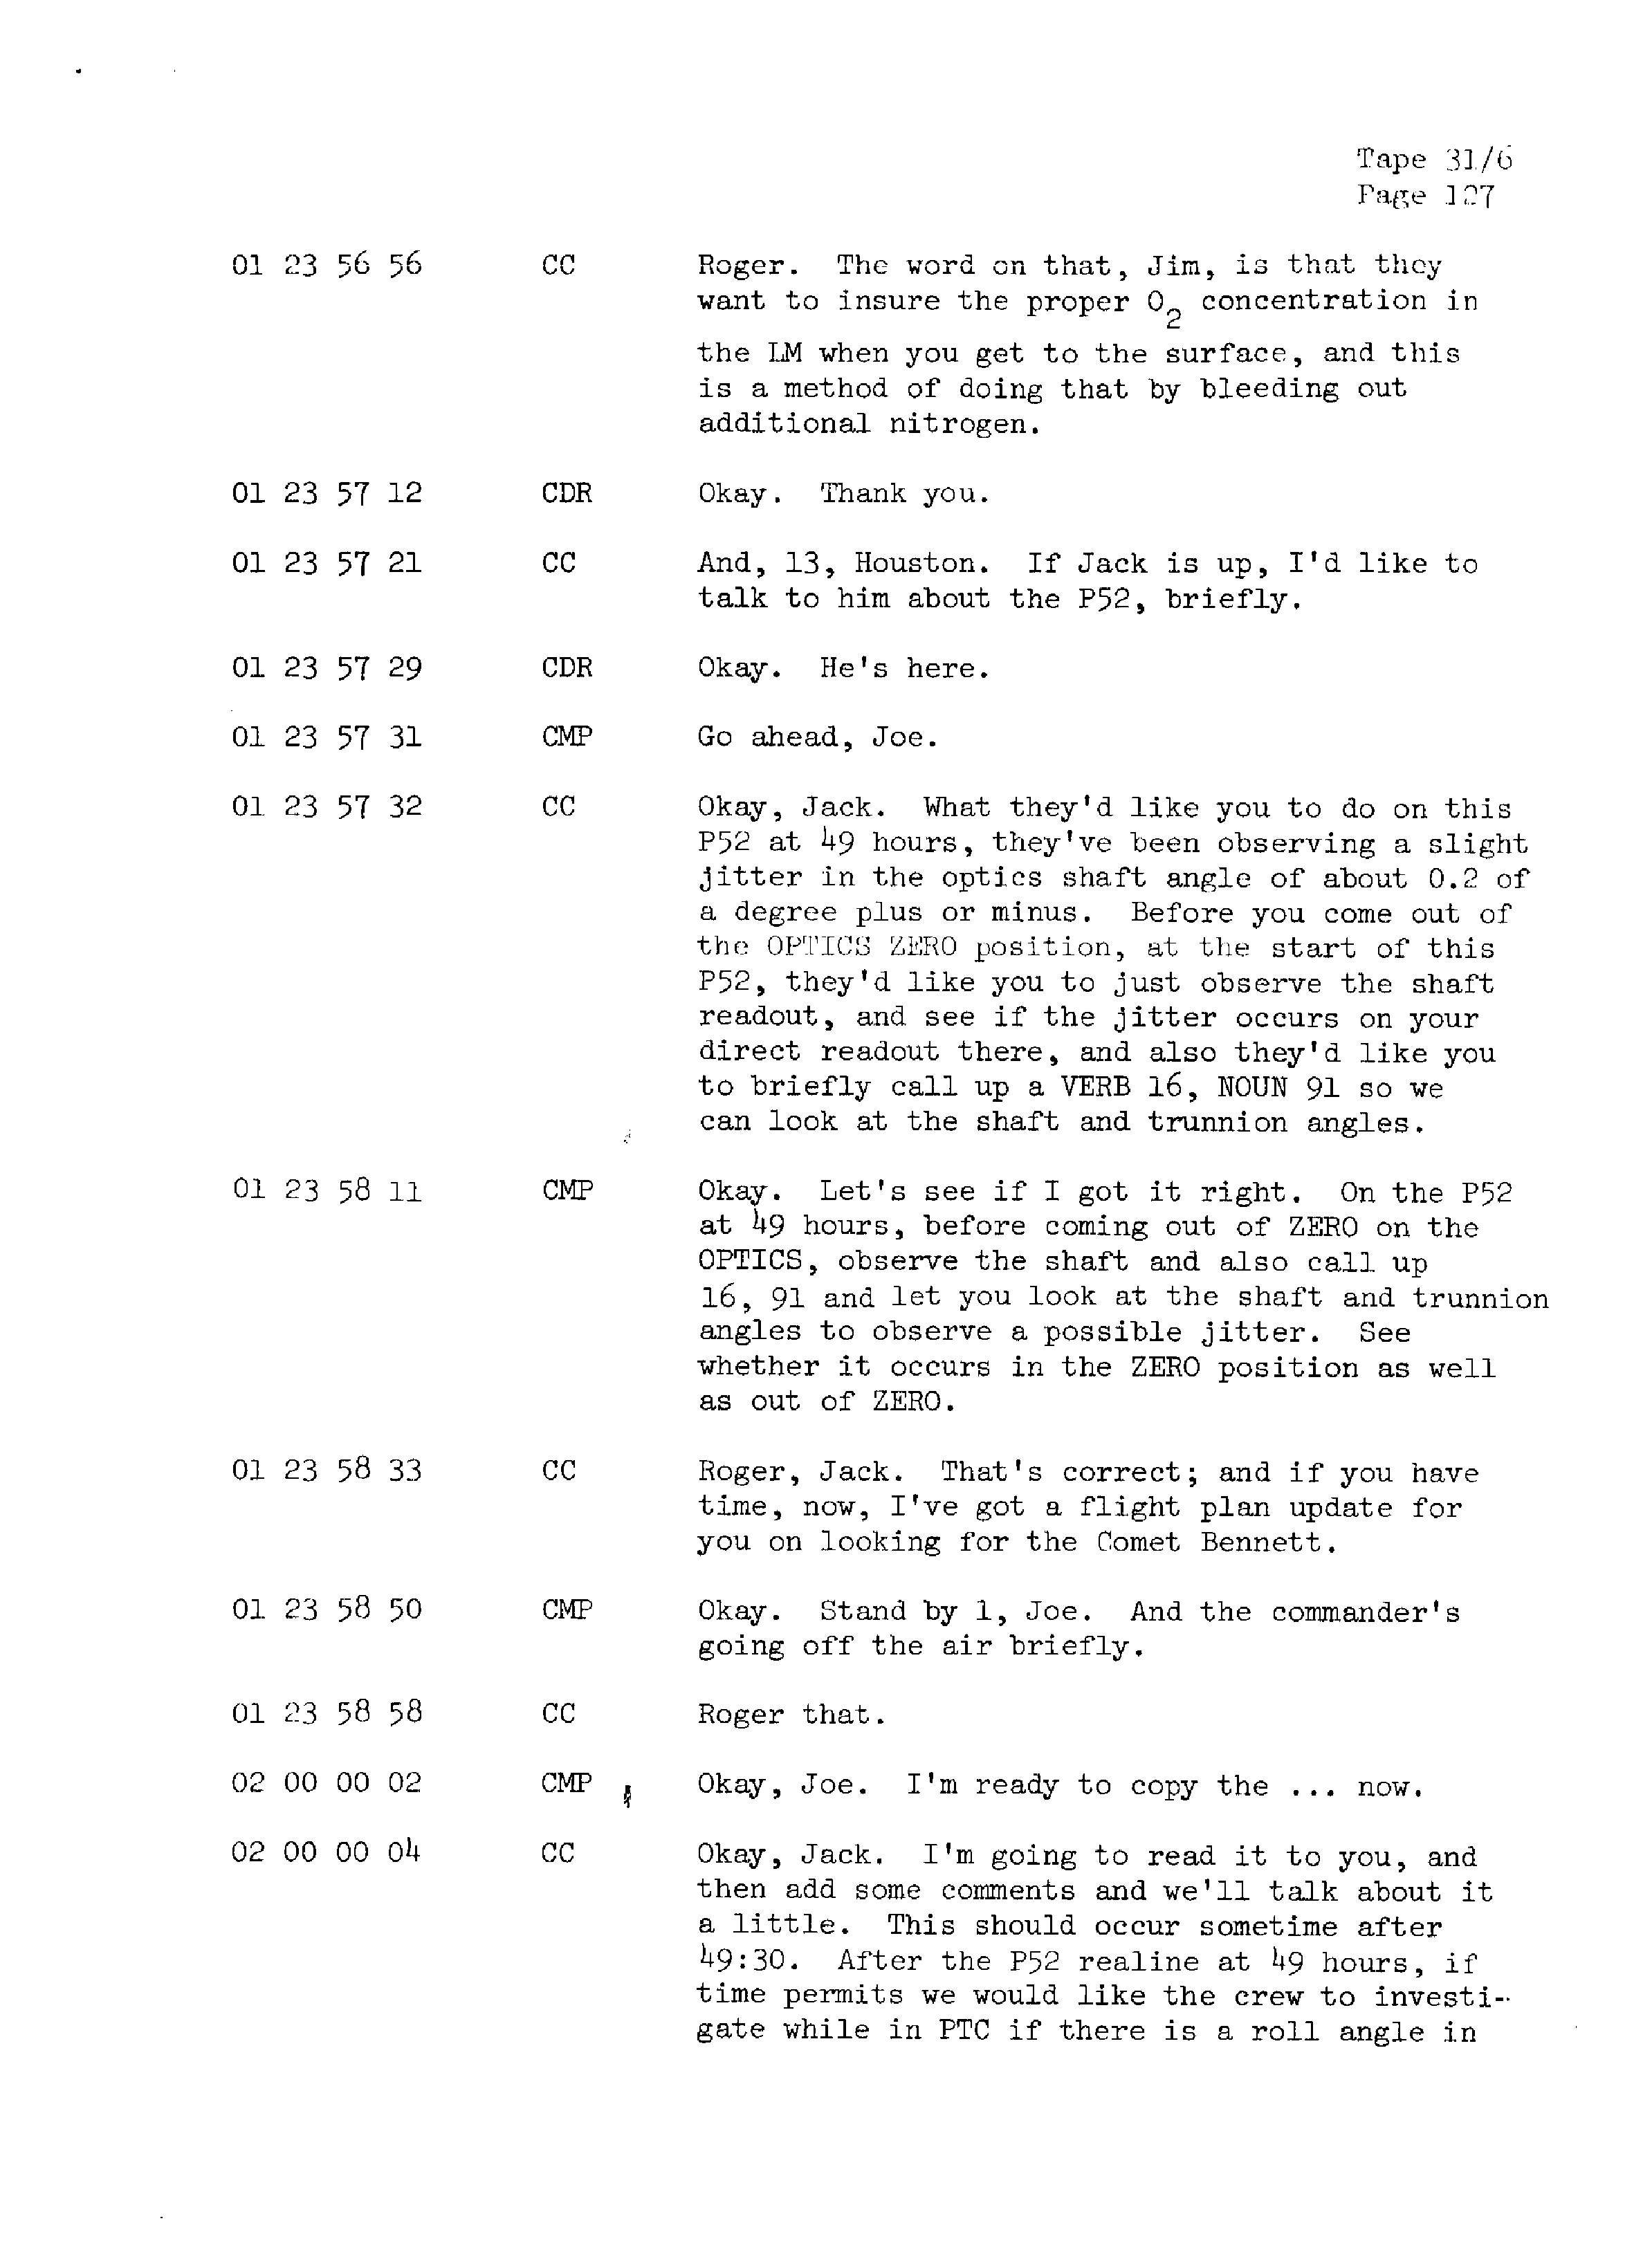 Page 134 of Apollo 13’s original transcript